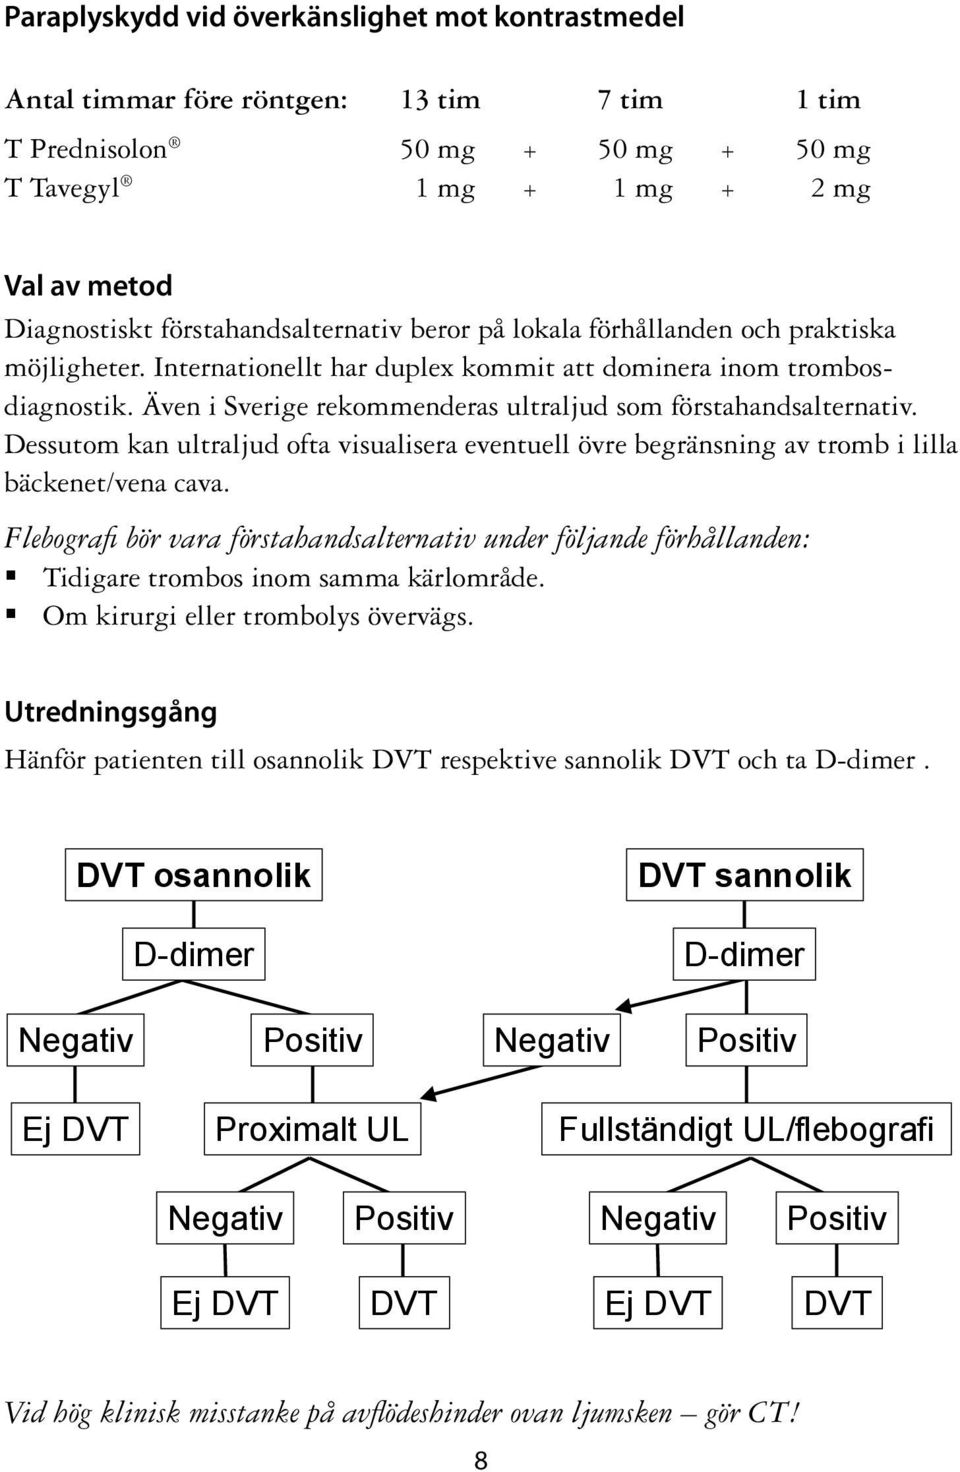 Även i Sverige rekommenderas ultraljud som förstahandsalternativ. Dessutom kan ultraljud ofta visualisera eventuell övre begränsning av tromb i lilla bäckenet/vena cava.